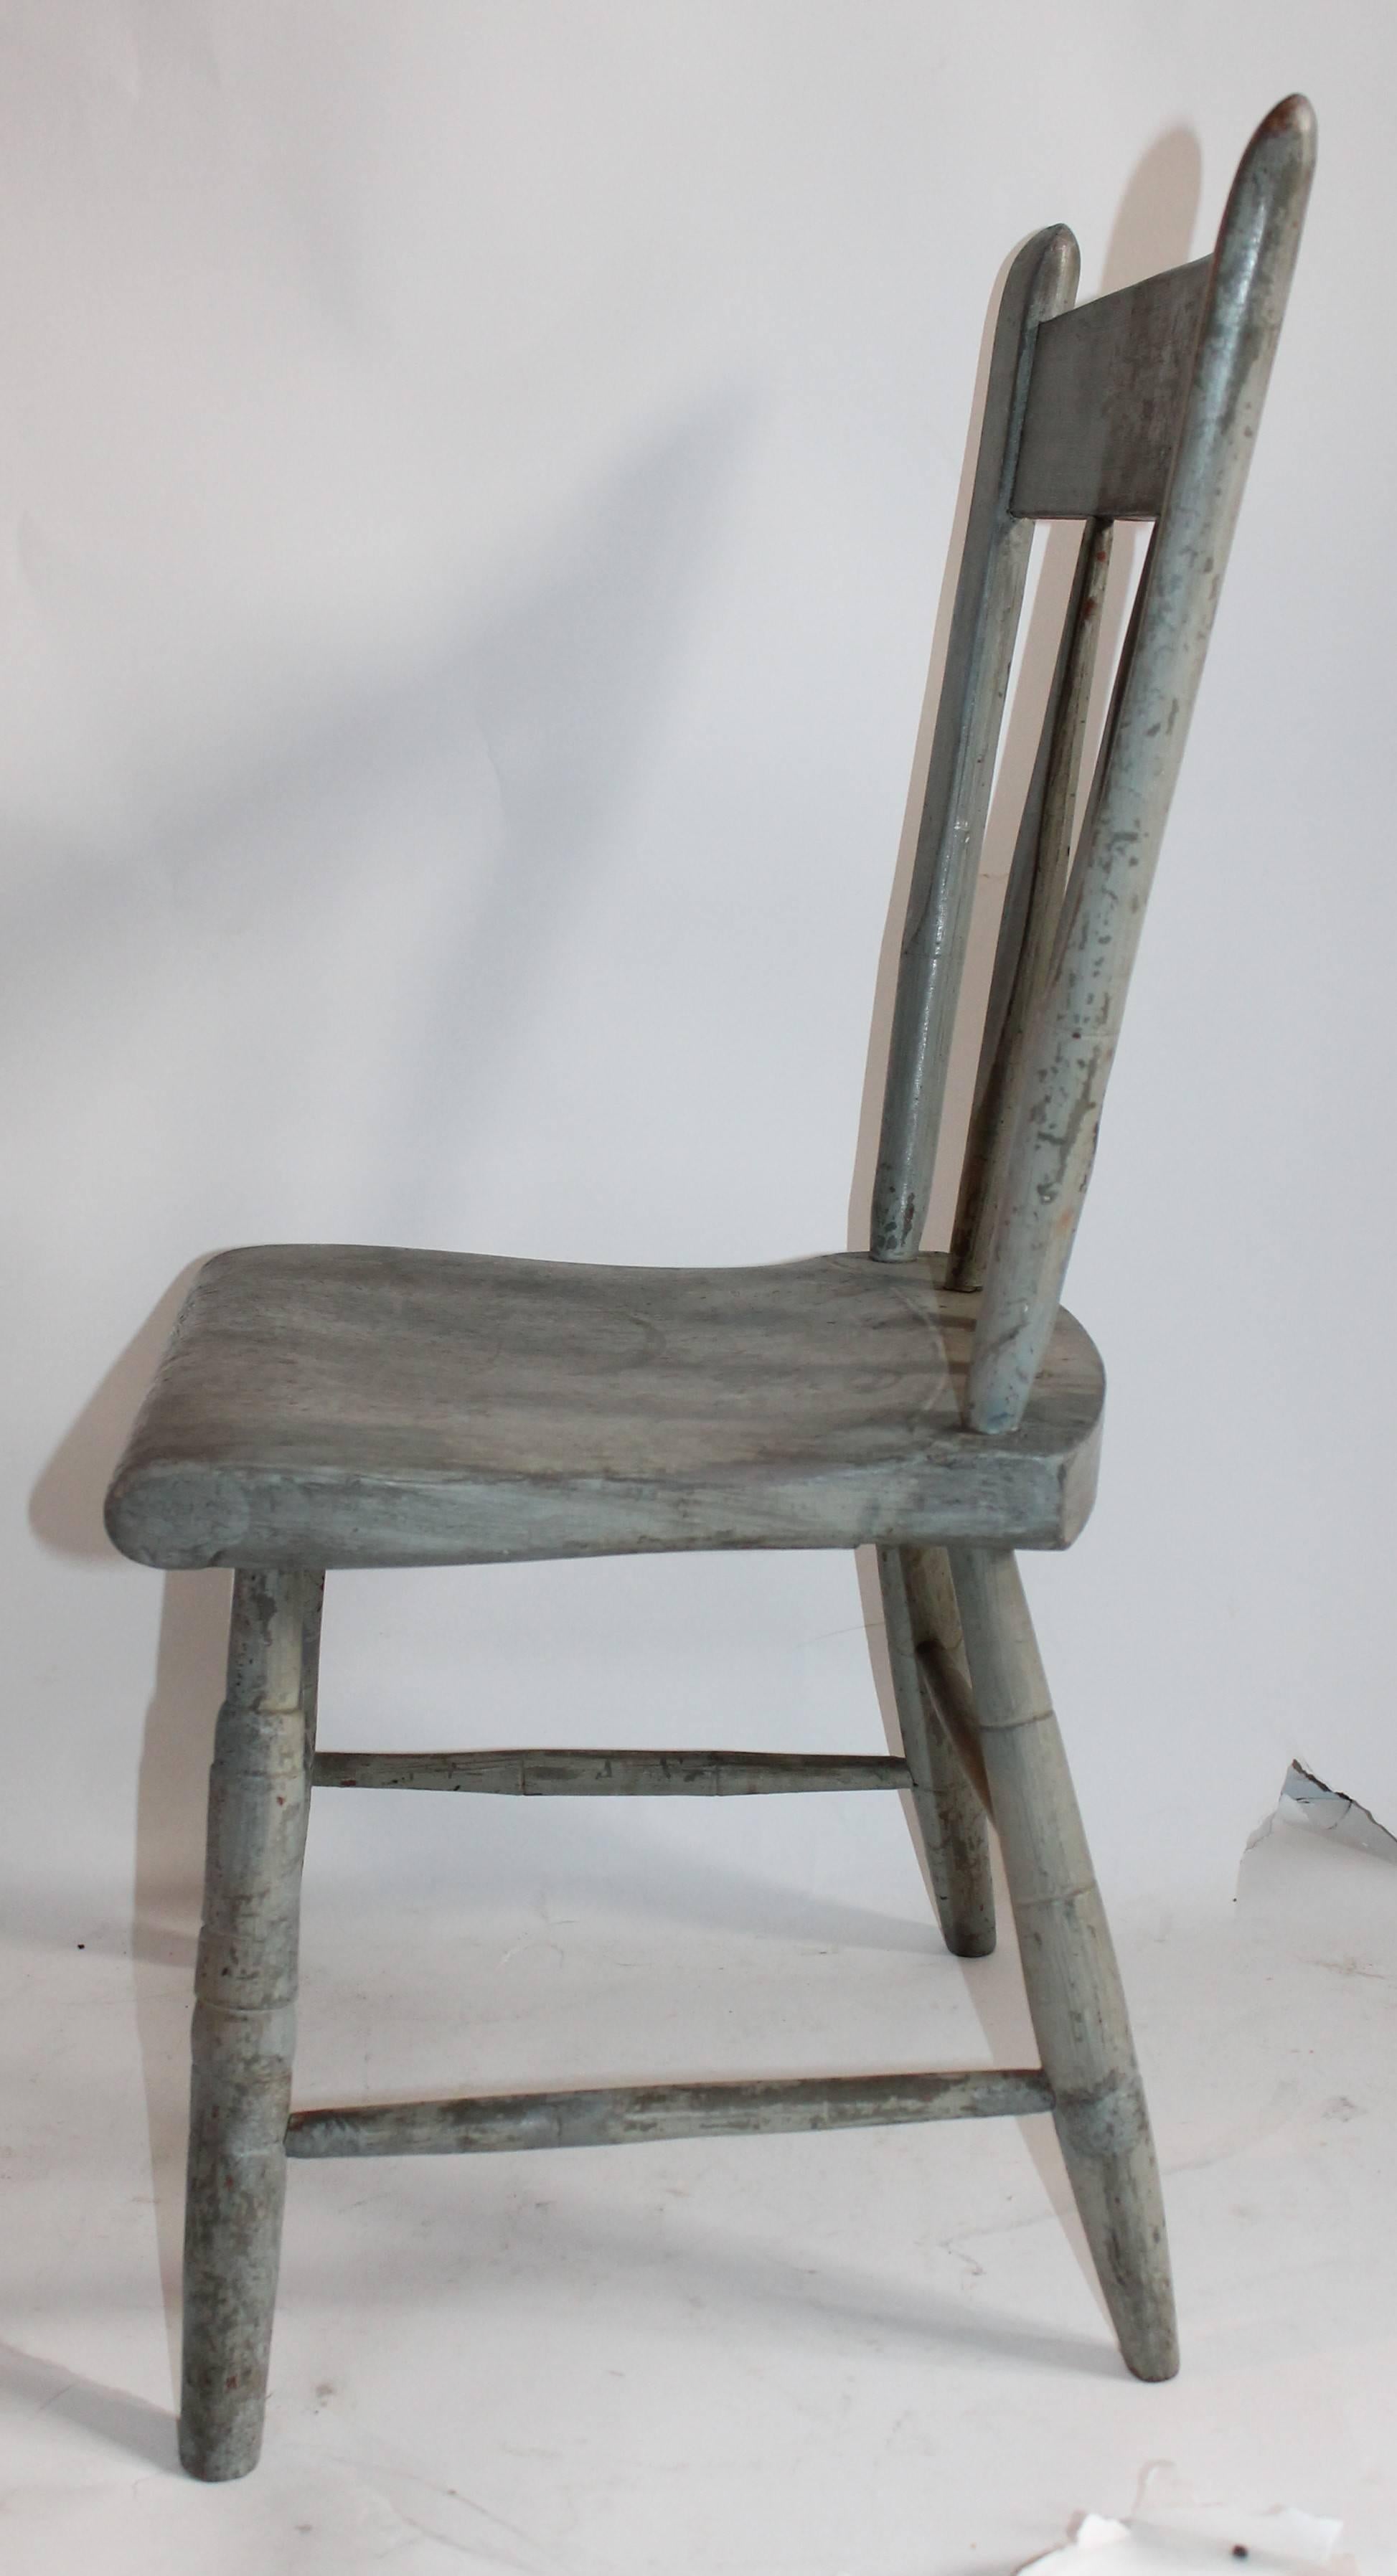 Dieser feine Pfeil zurück windsor Kinderstuhl ist in gutem Zustand und alle ursprünglichen lackierten grauen Oberfläche. Es ist ein Pfeilrücken-Windsor-Stuhl aus Neuengland.